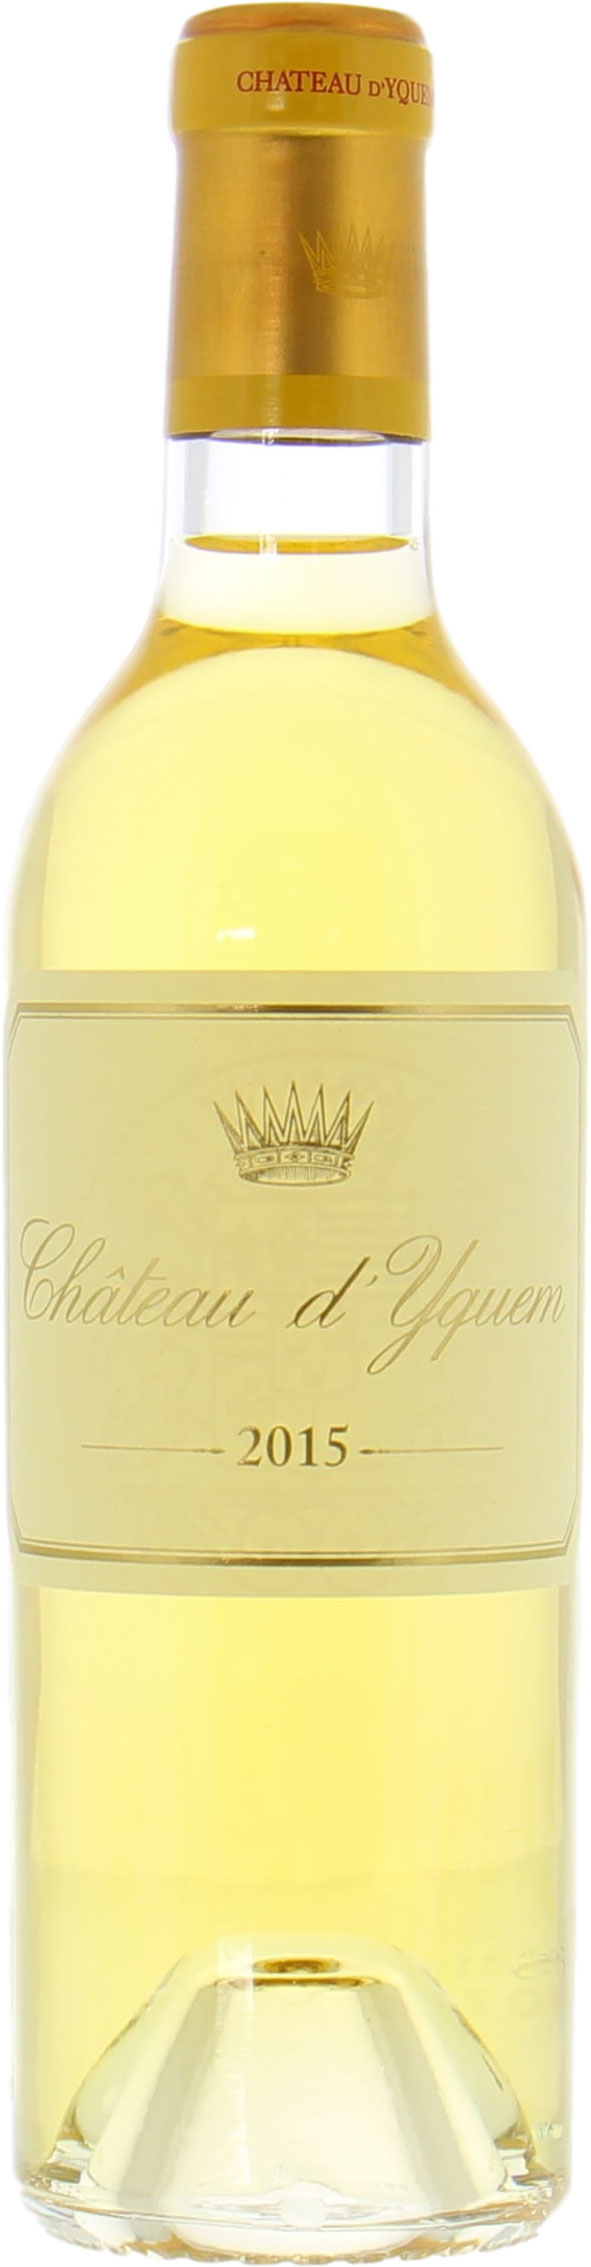 Chateau D'Yquem - Chateau D'Yquem 2015 Perfect